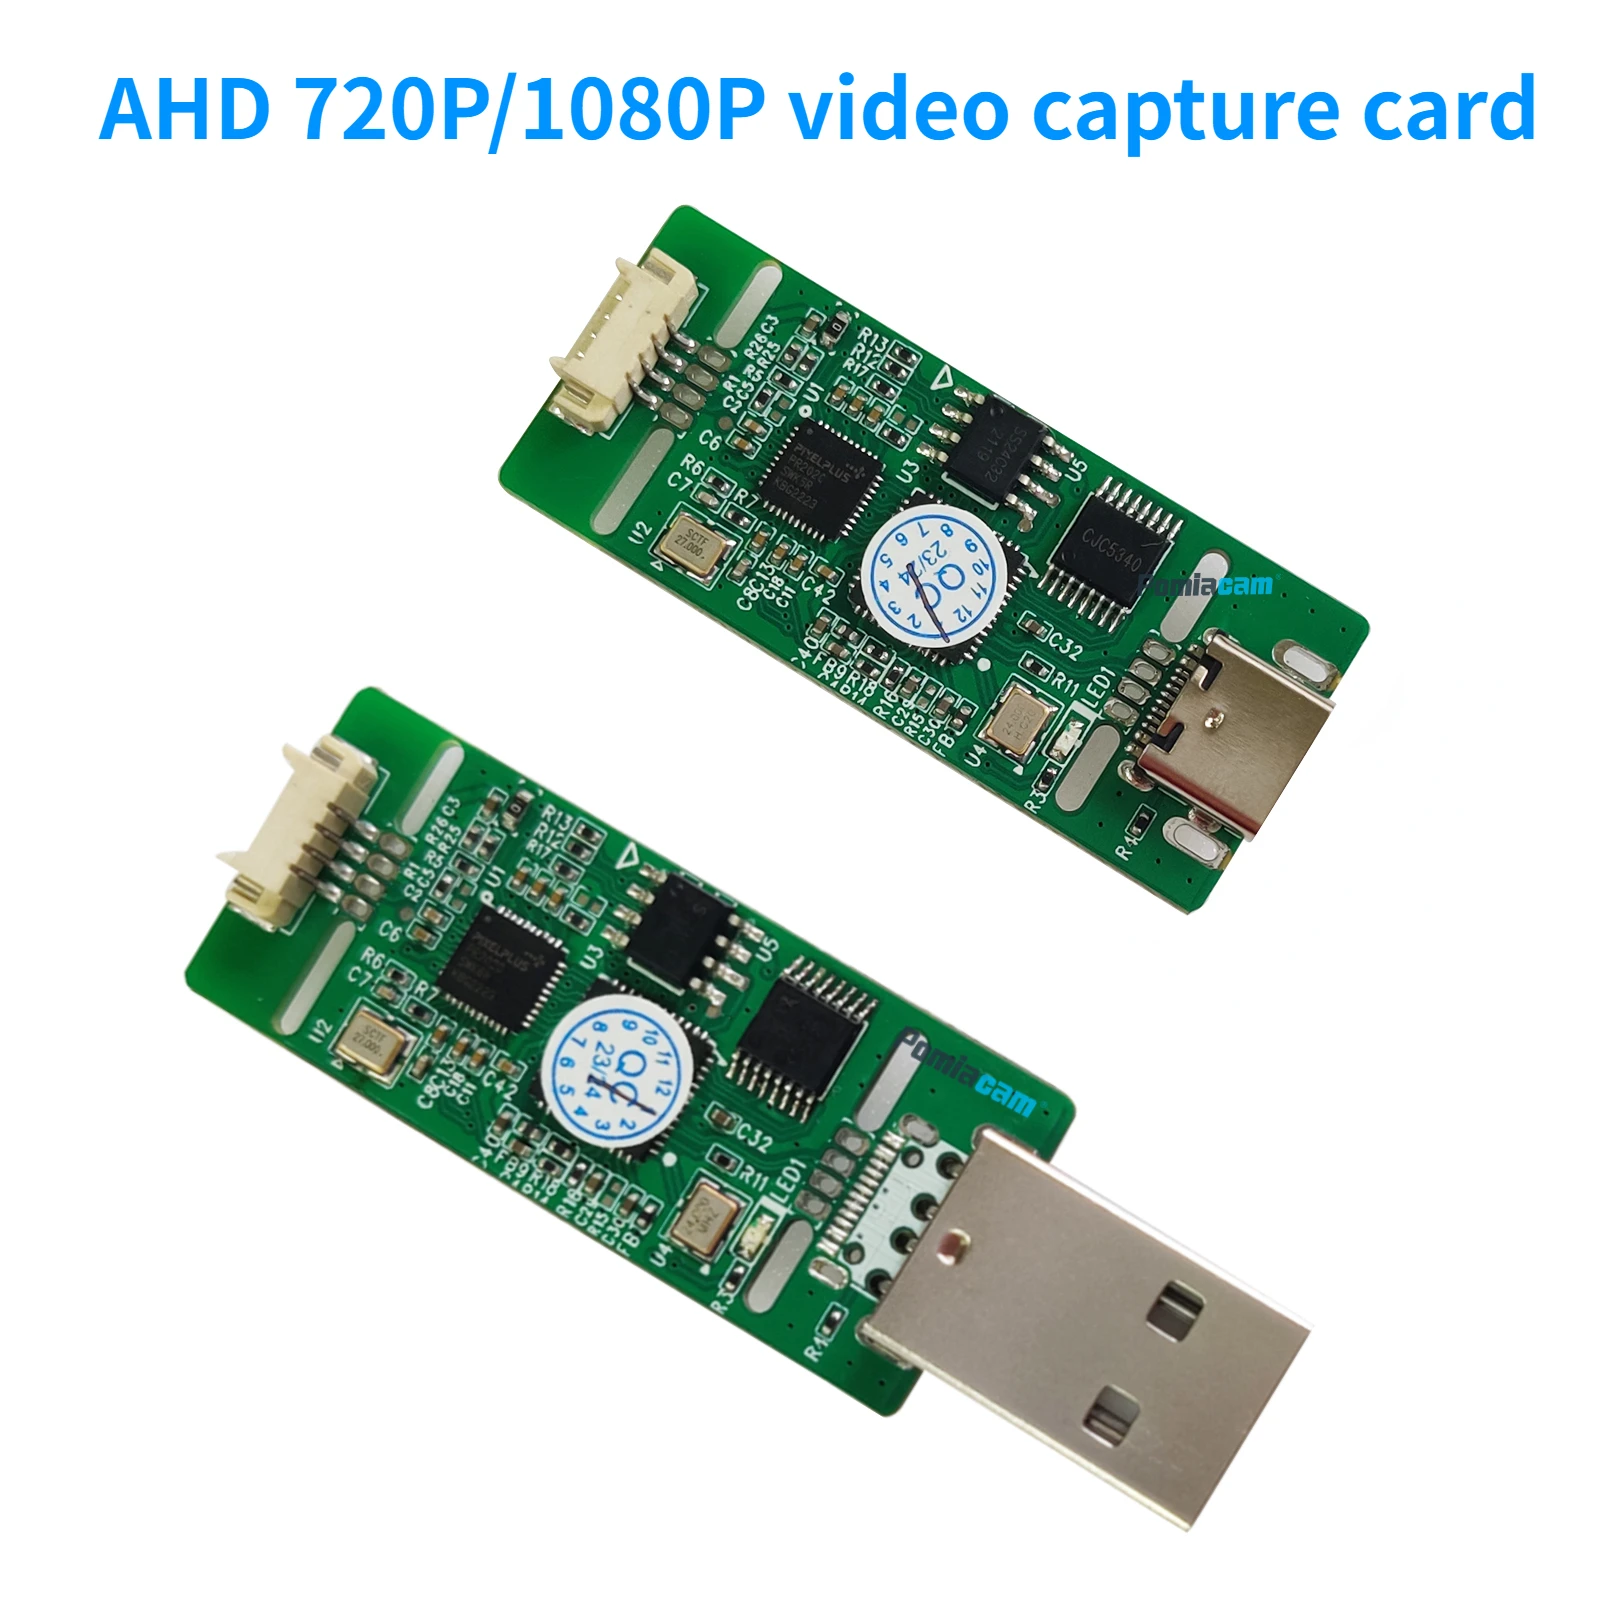 

Модуль AHD на Type-c, аналоговый сигнал AHD 720P/1080P на USB для захвата цифрового USB, модуль камеры для Android, бесплатное подключение и воспроизведение